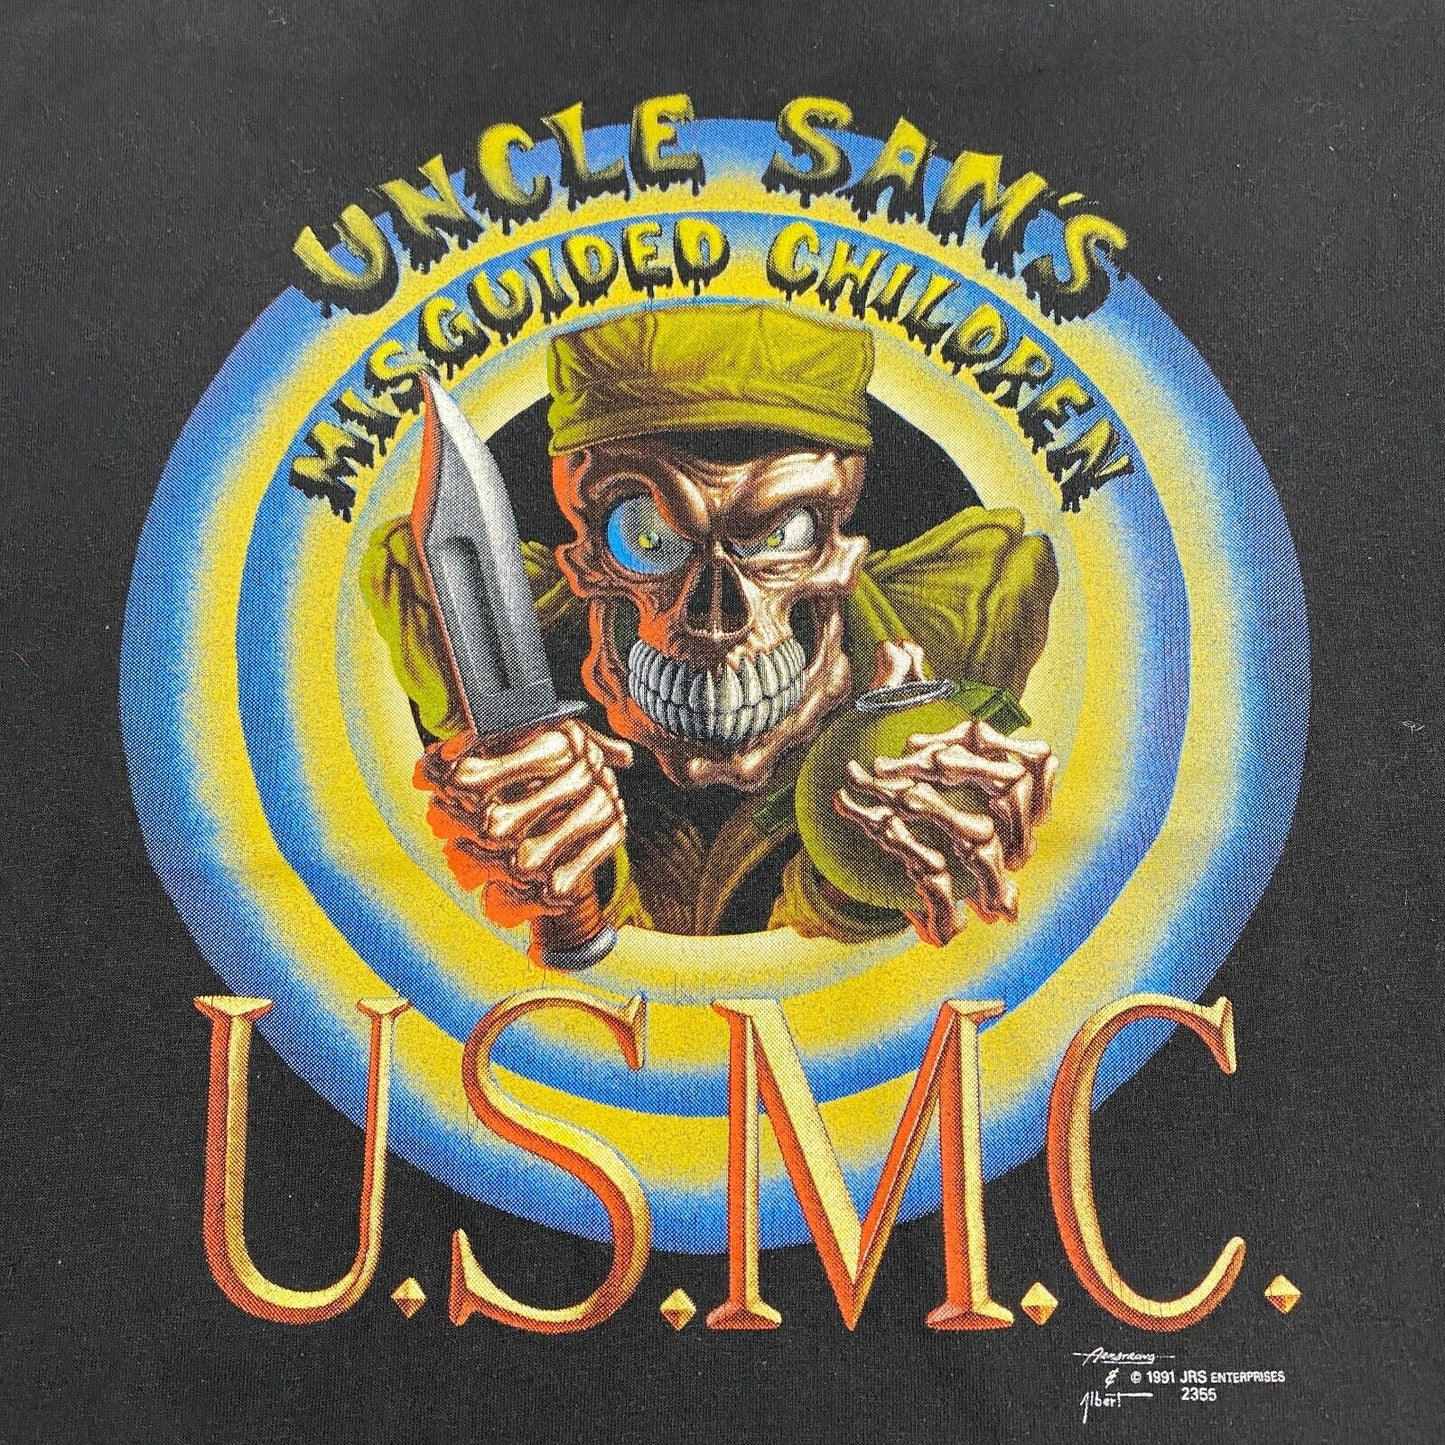 VINTAGE 90s Uncle Sams Misguided Children USMC T-Shirt sz M-L Men